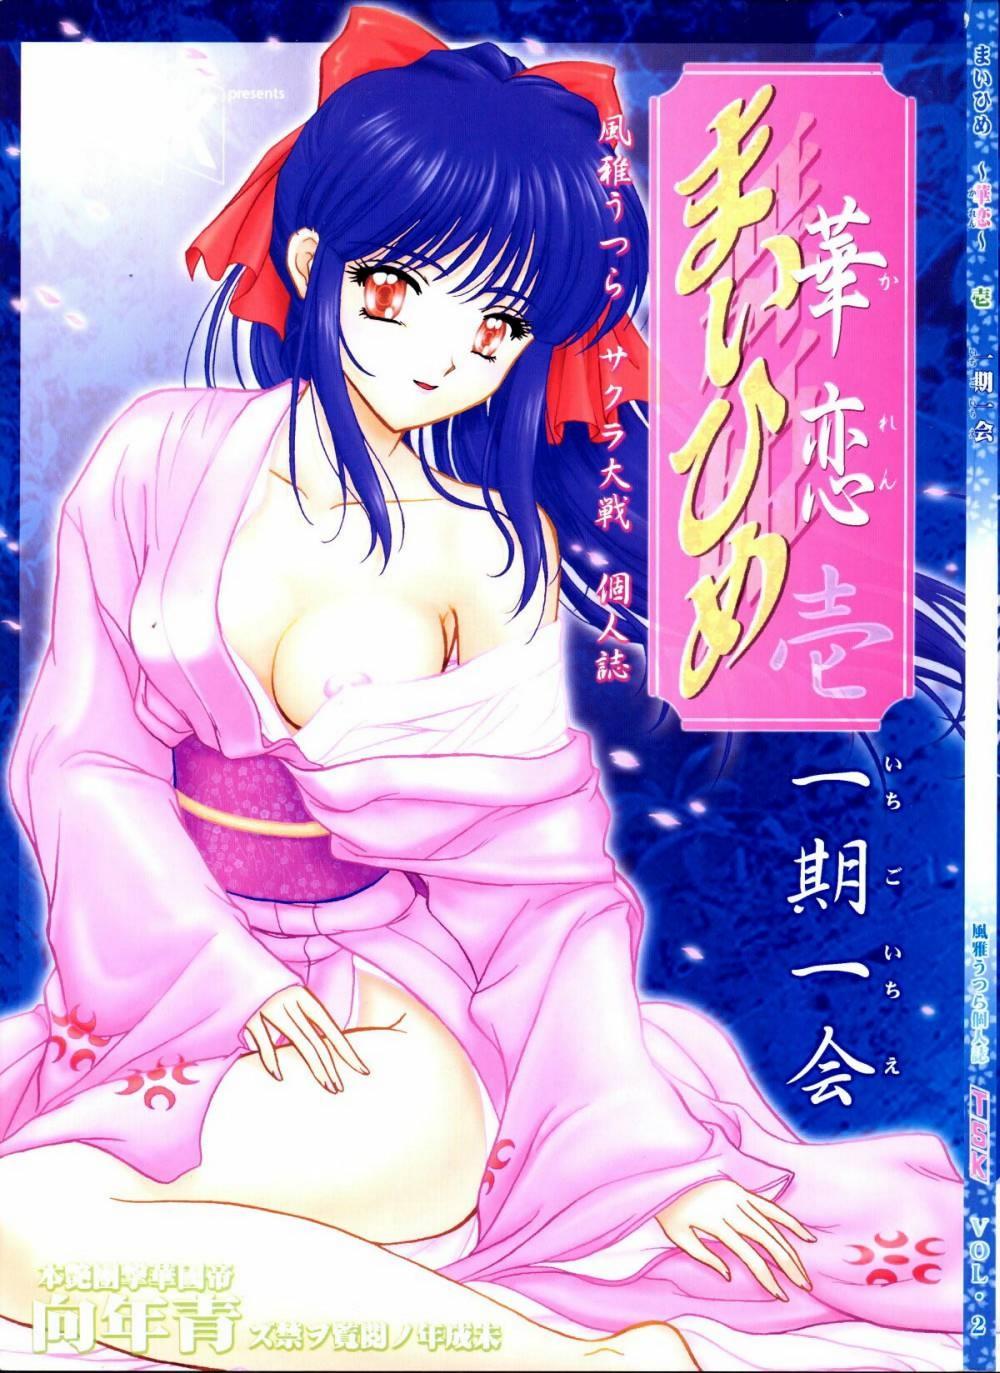 Free Hardcore Porn [TSK] Mai Hime ~Karen~ 1 Ichigo Ichie (Sakura Wars) - Sakura taisen Mojada - Page 1